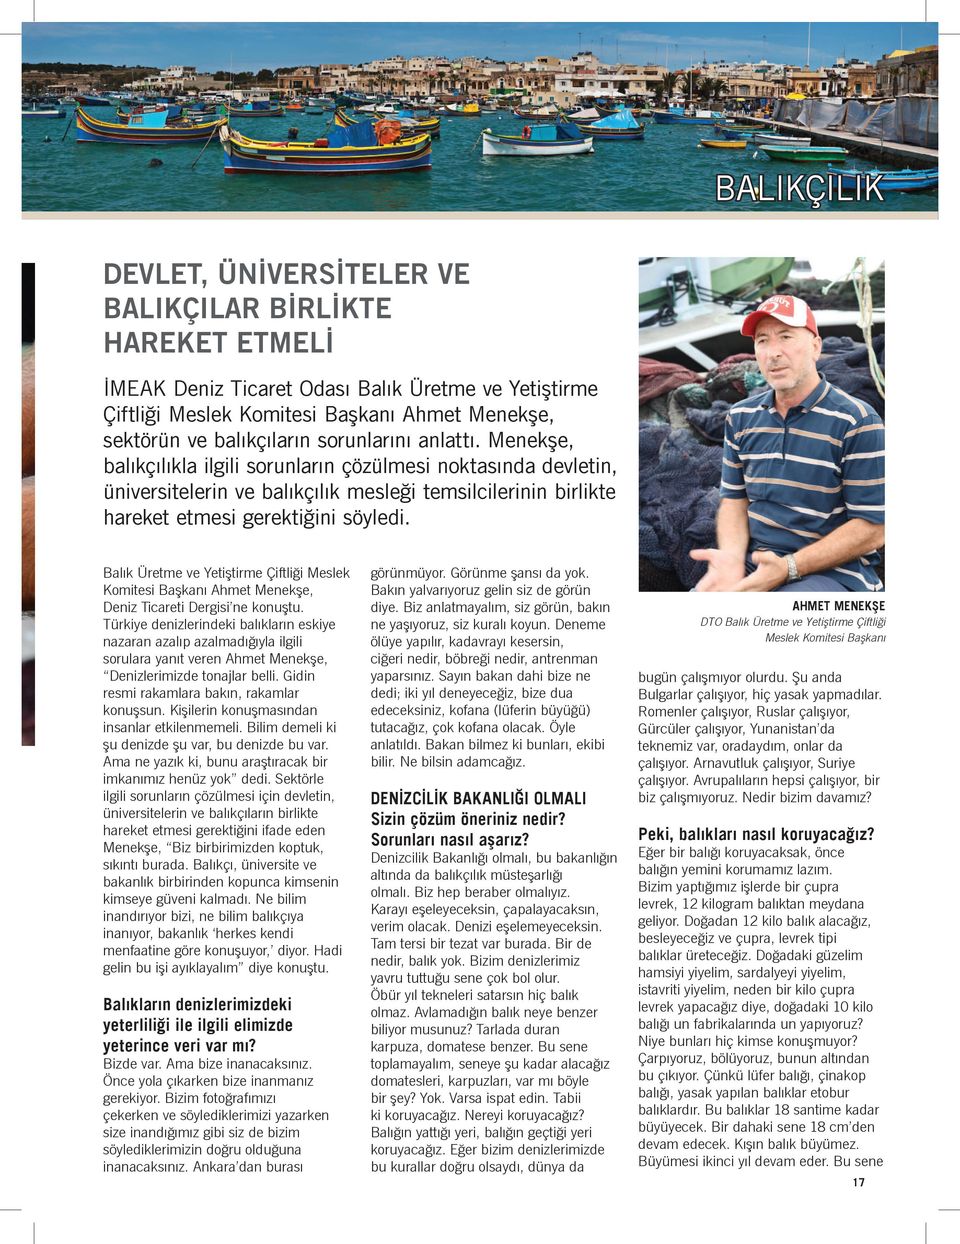 Balık Üretme ve Yetiştirme Çiftliği Meslek Komitesi Başkanı Ahmet Menekşe, Deniz Ticareti Dergisi ne konuştu.